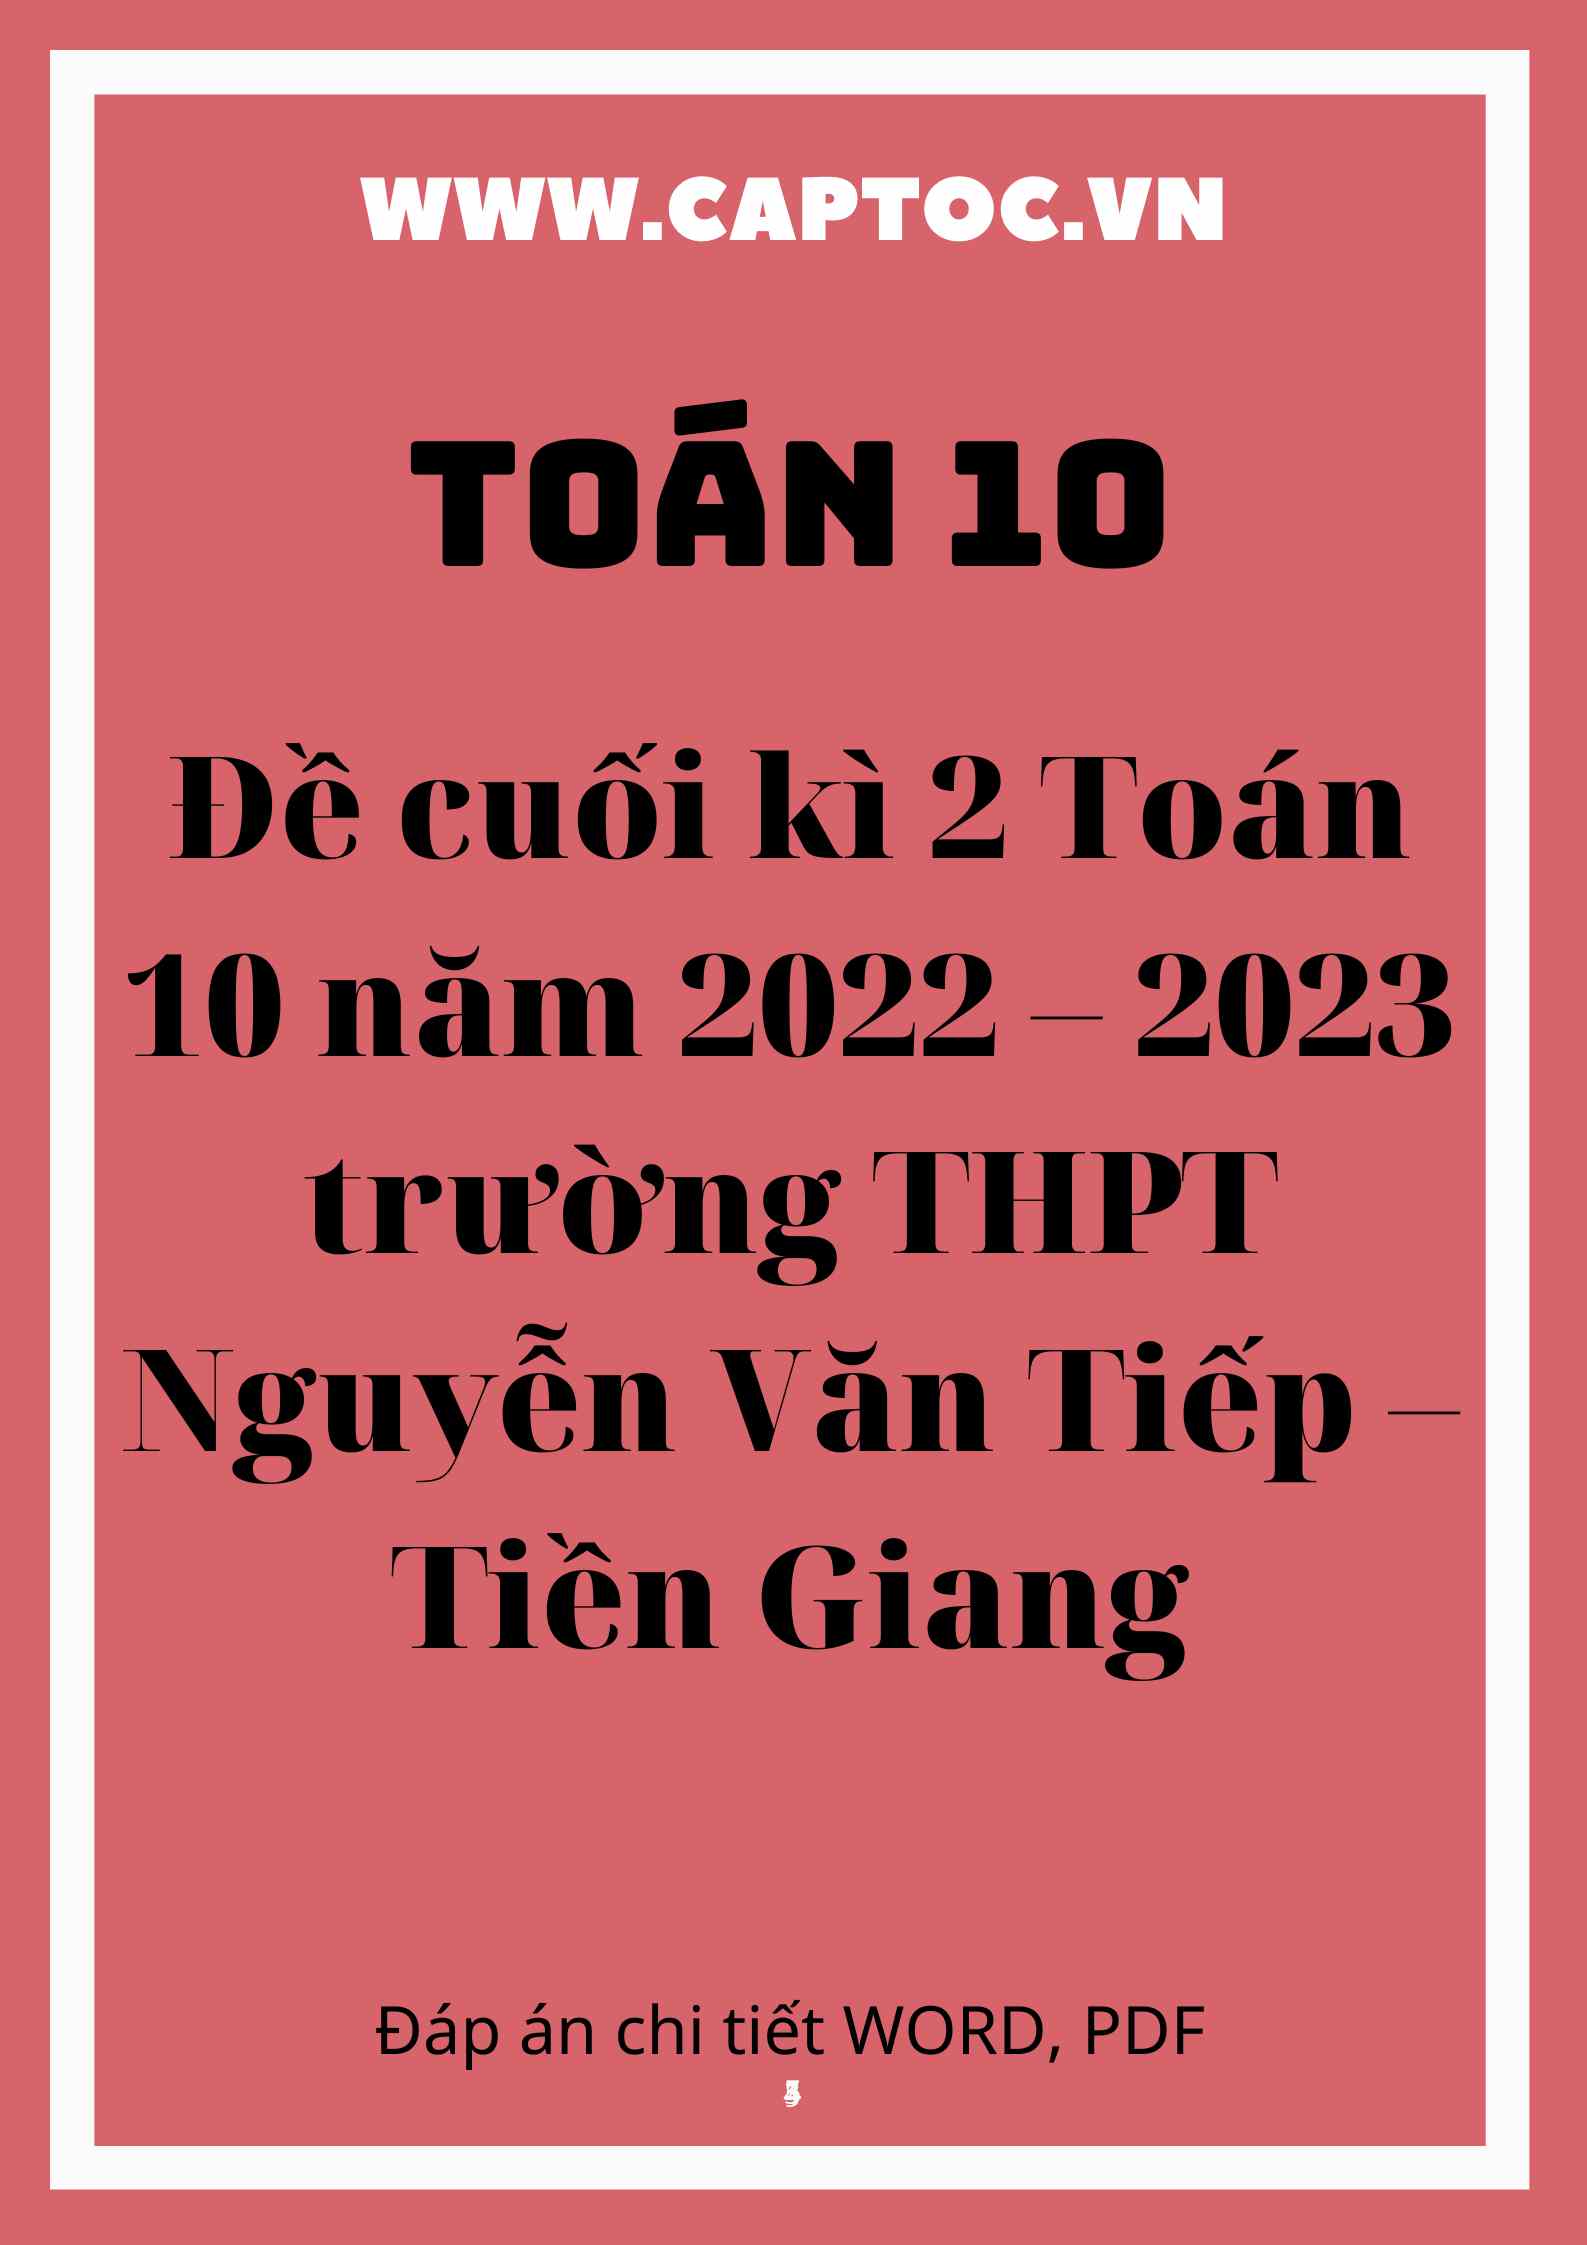 Đề cuối kì 2 Toán 10 năm 2022 – 2023 trường THPT Nguyễn Văn Tiếp – Tiền Giang